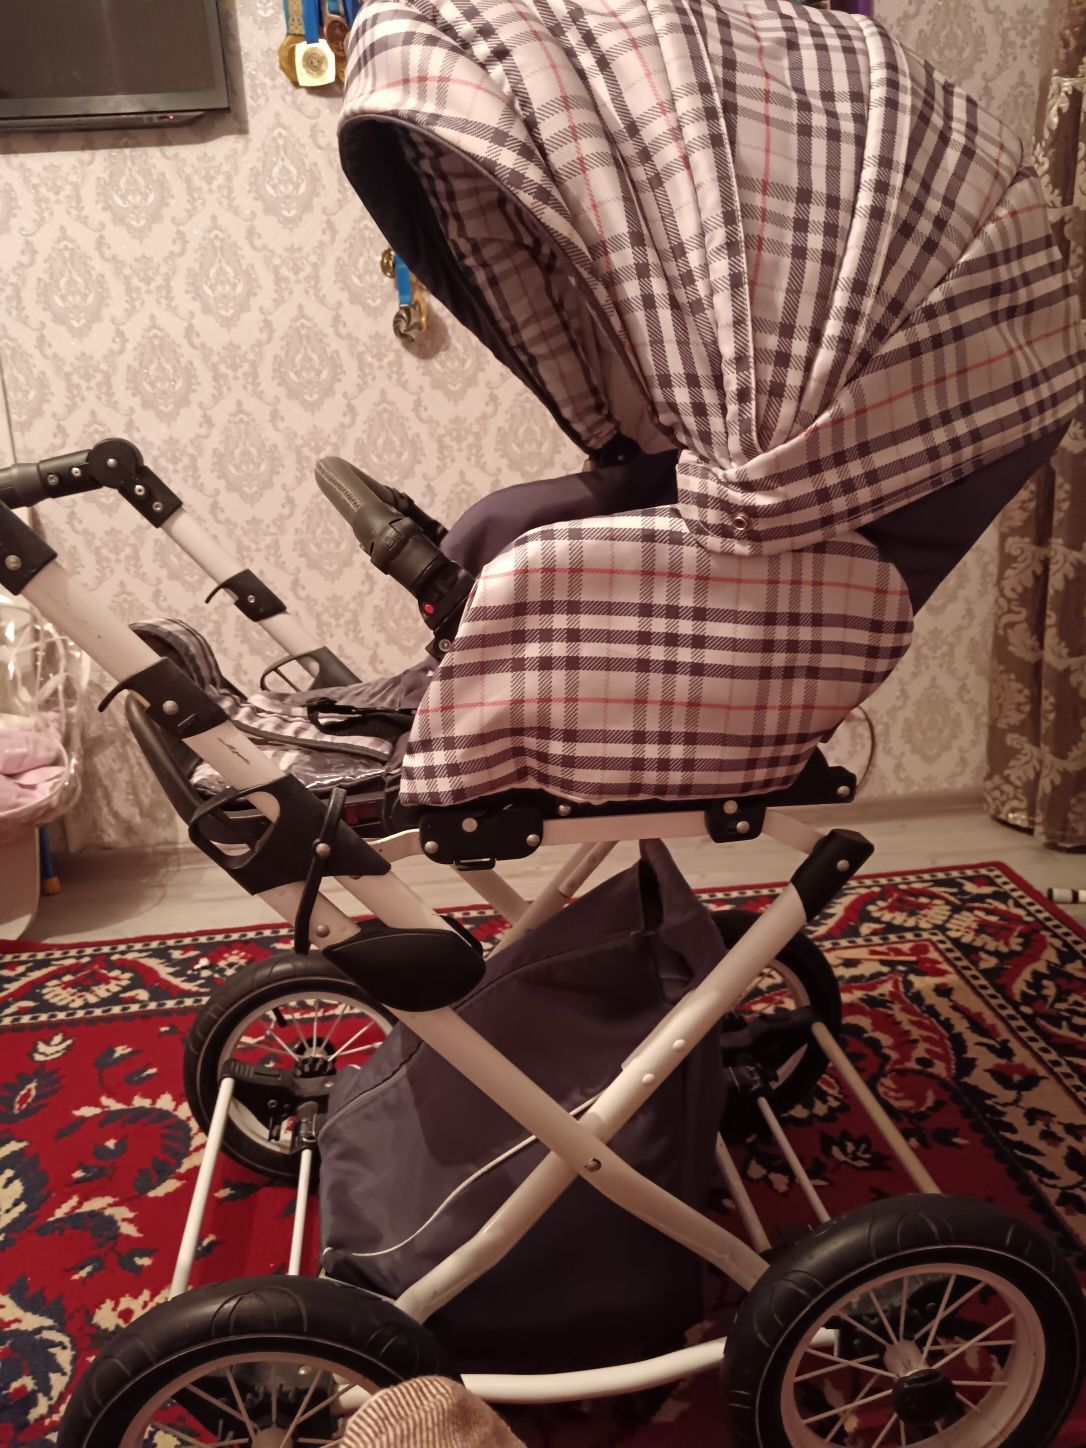 Детская коляска для новорождённого  имеется люлка и прогулочные блок.